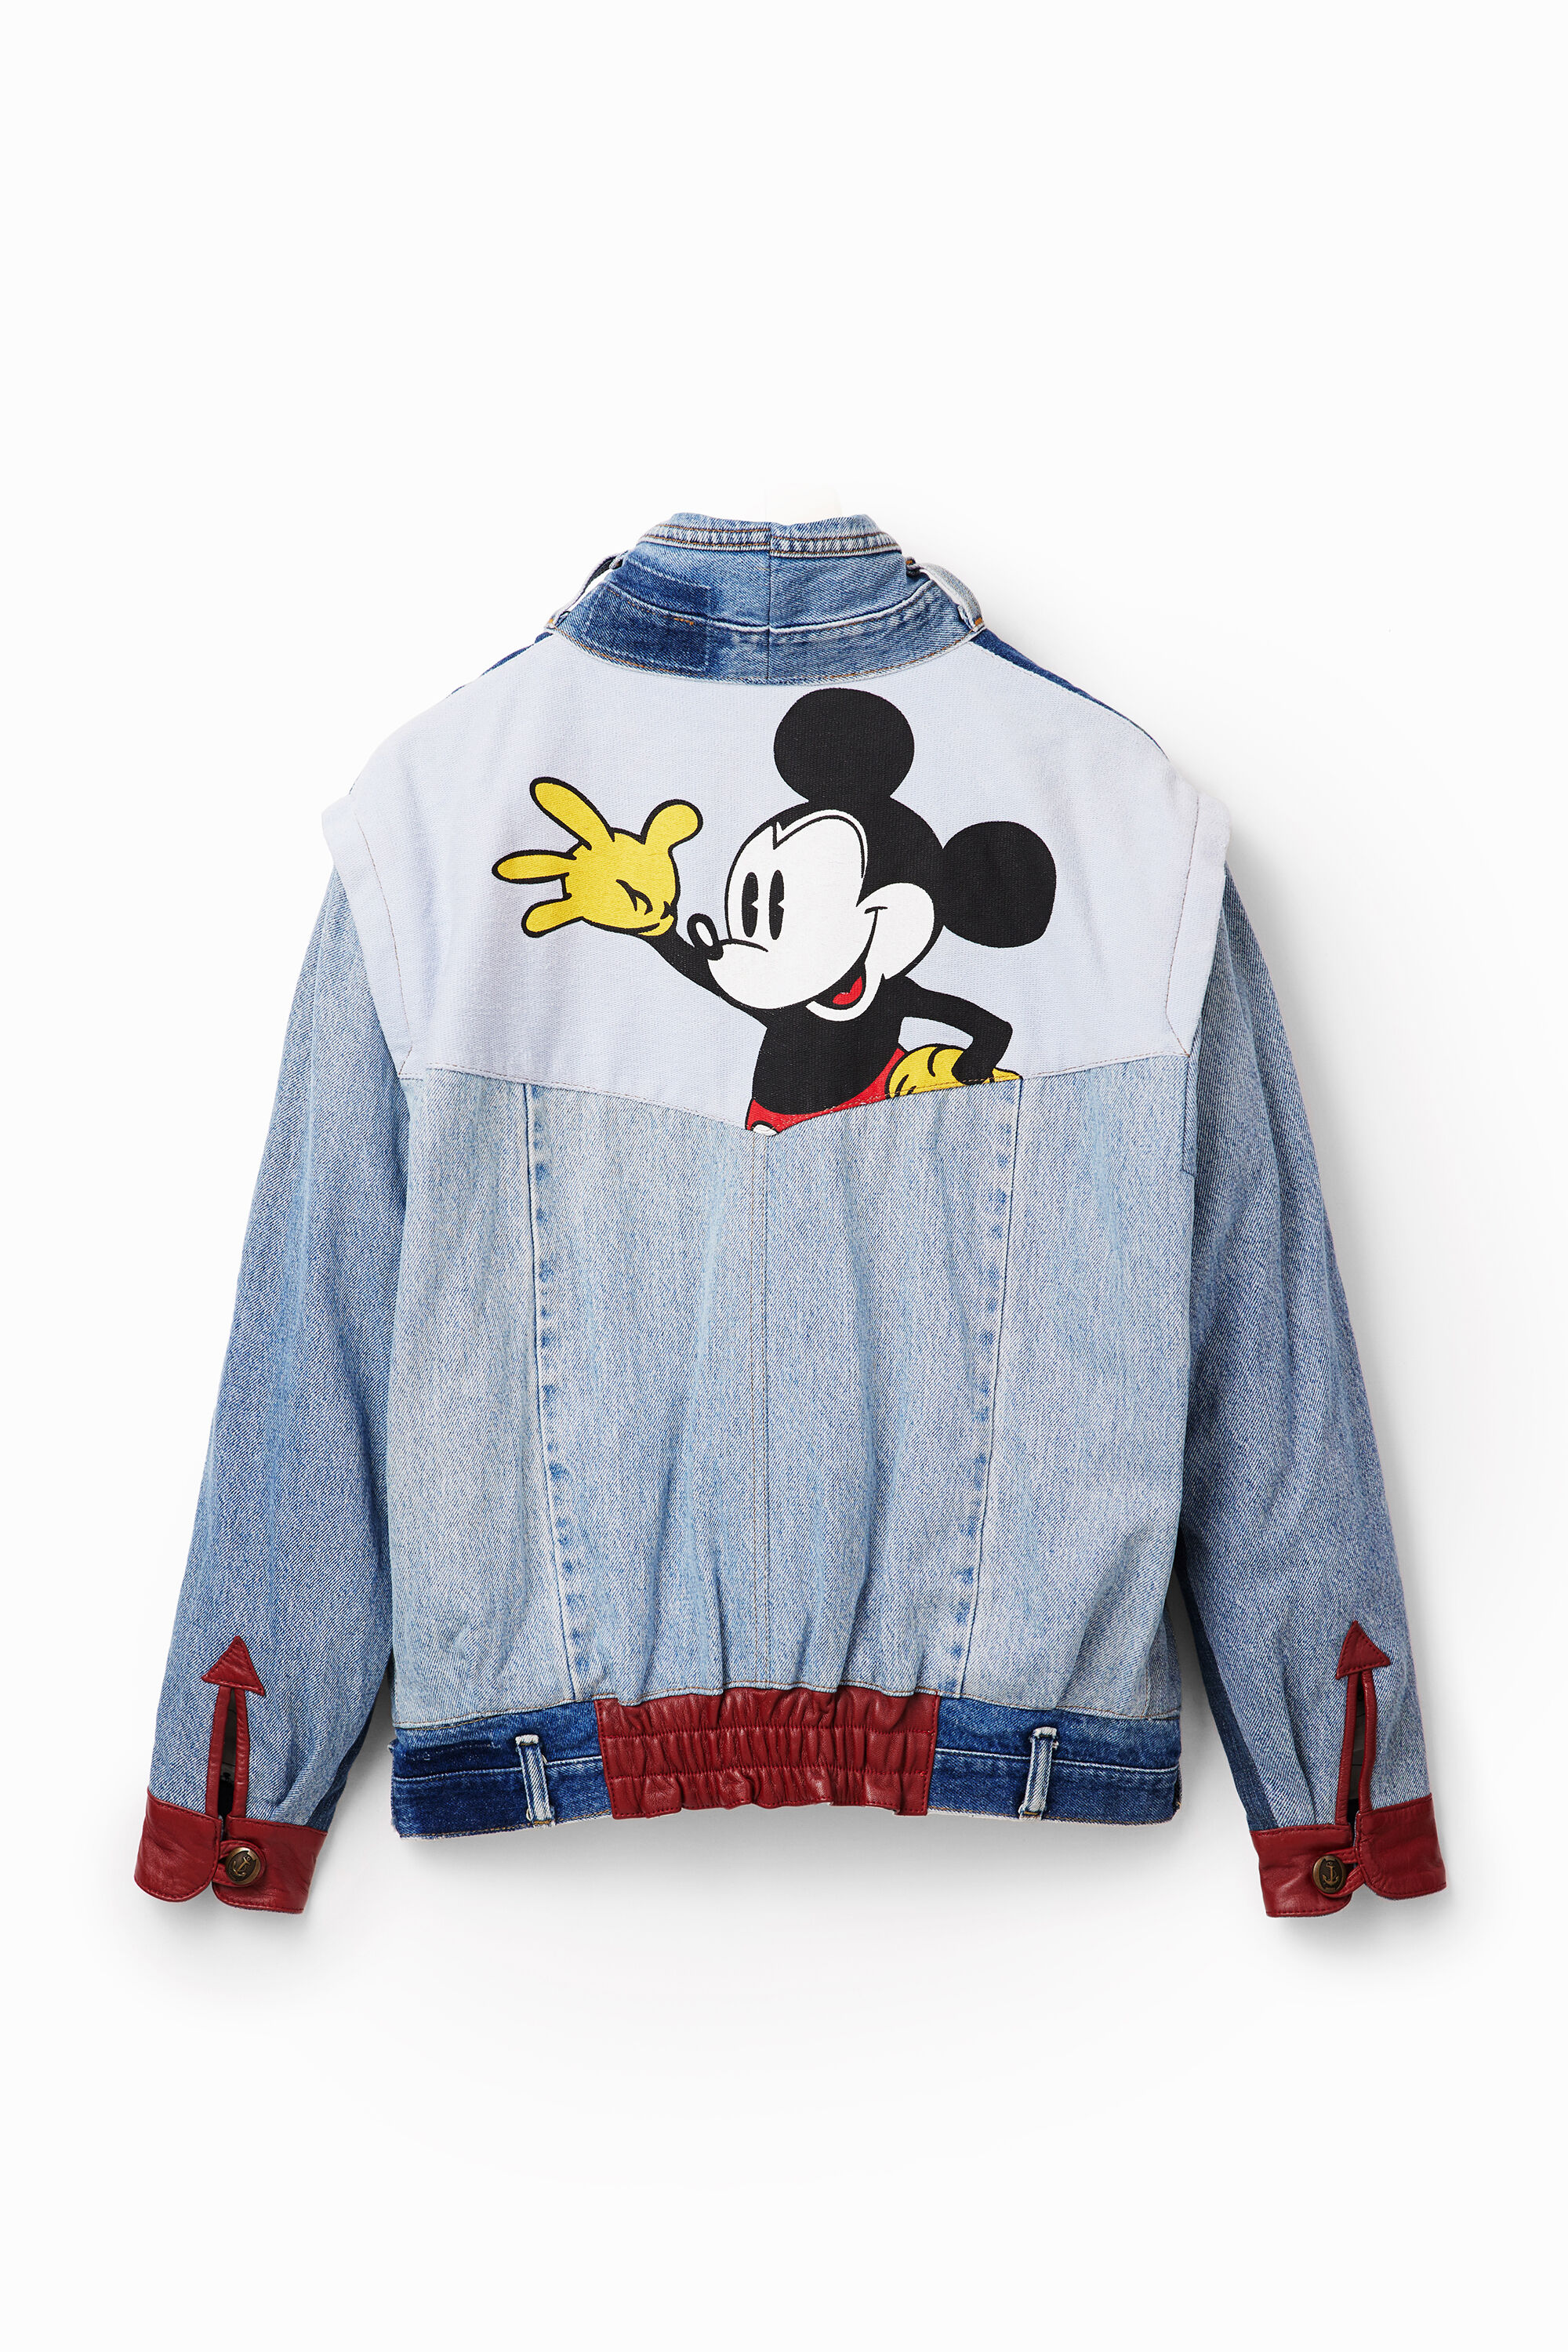 Desigual Iconic Mickey Mouse Jacket